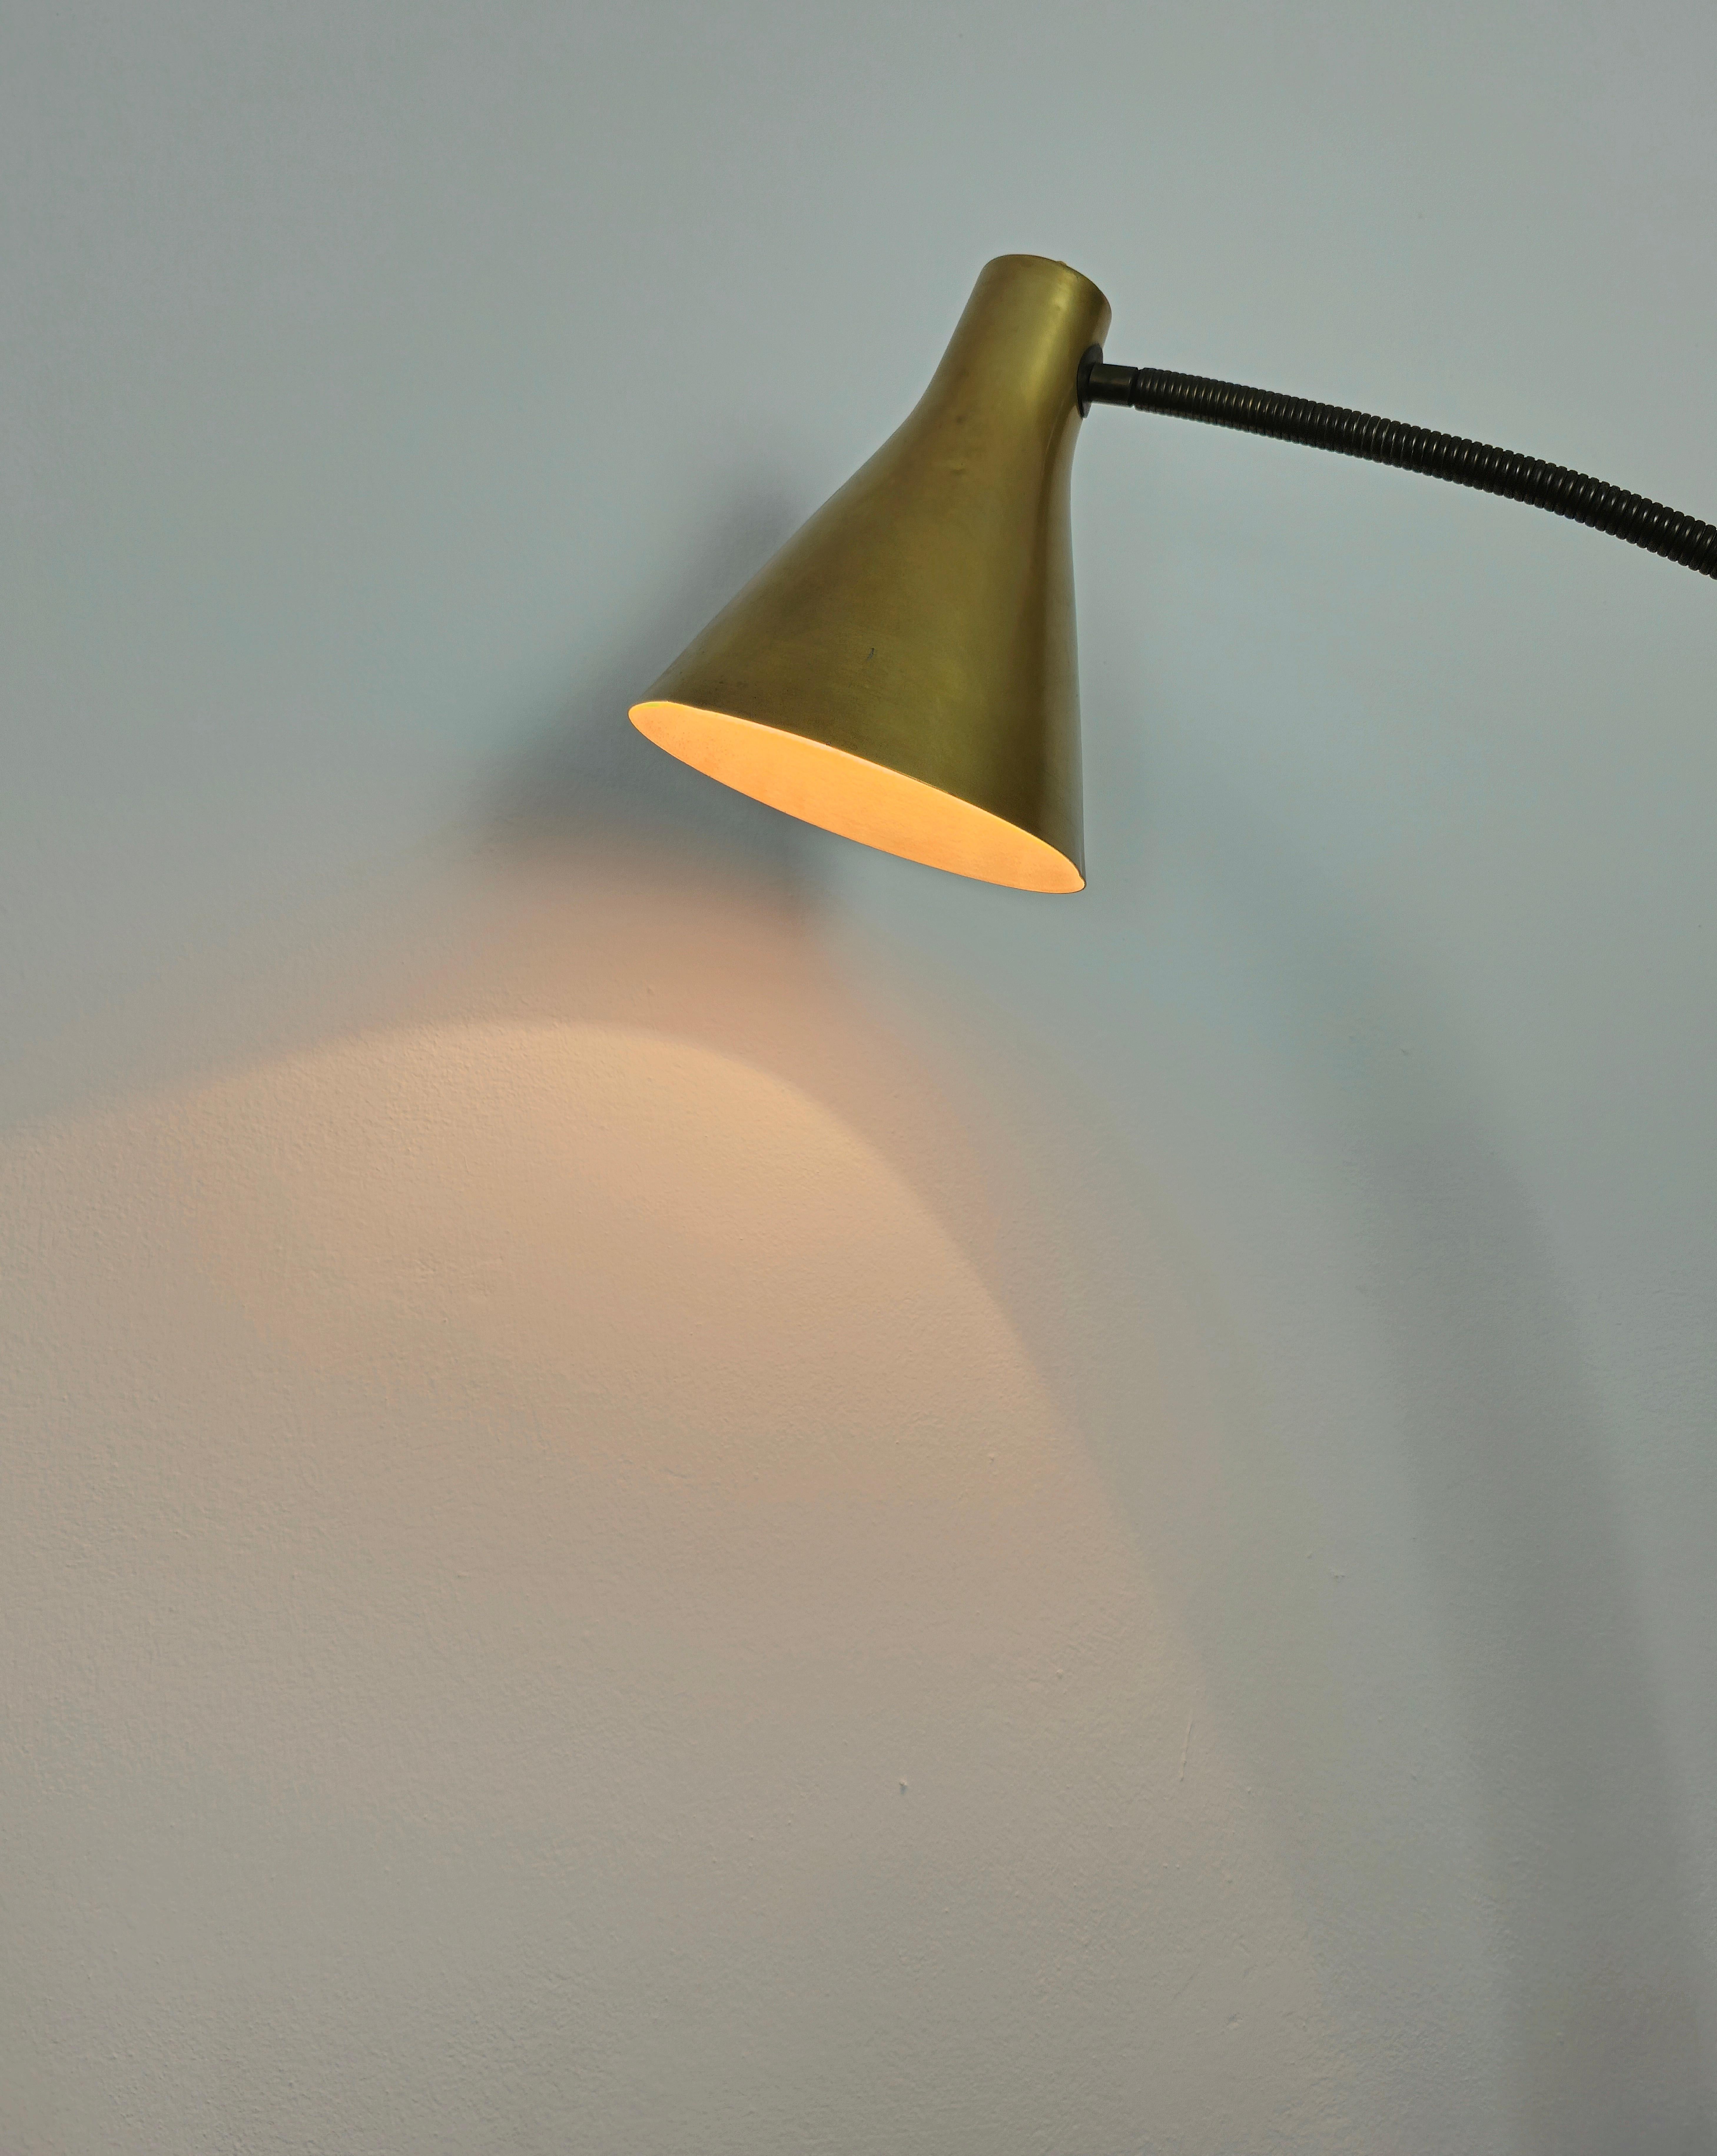 lampadaires design italien